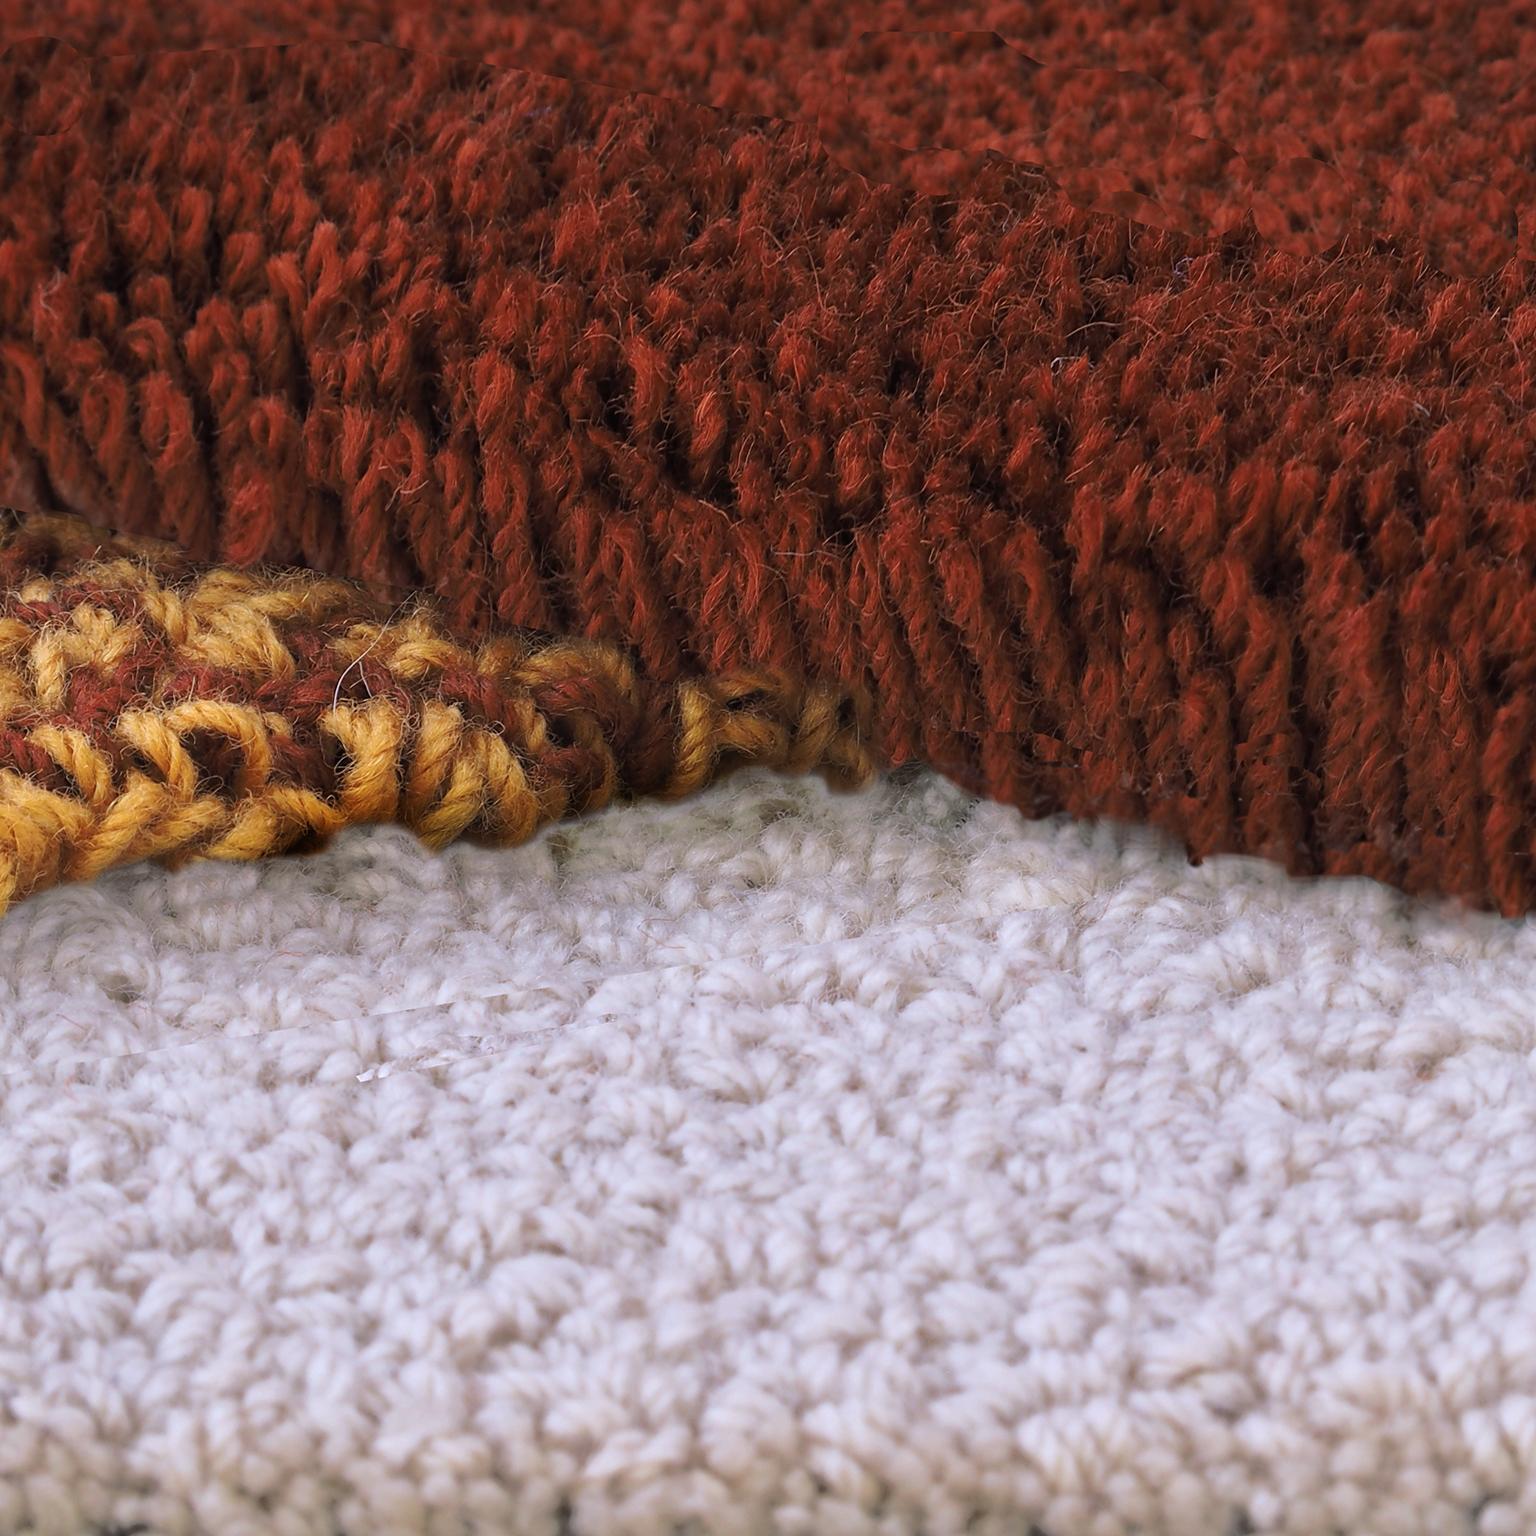 Teppich aus 100% neuseeländischer Wolle
Entworfen von Seraina Lareida 
Hergestellt in Italien

Oci Left ist eine der Teppichformen der Linie, die sich leicht an jede Art von Raum anpassen lässt.
Wenn man weitergeht, spürt man die